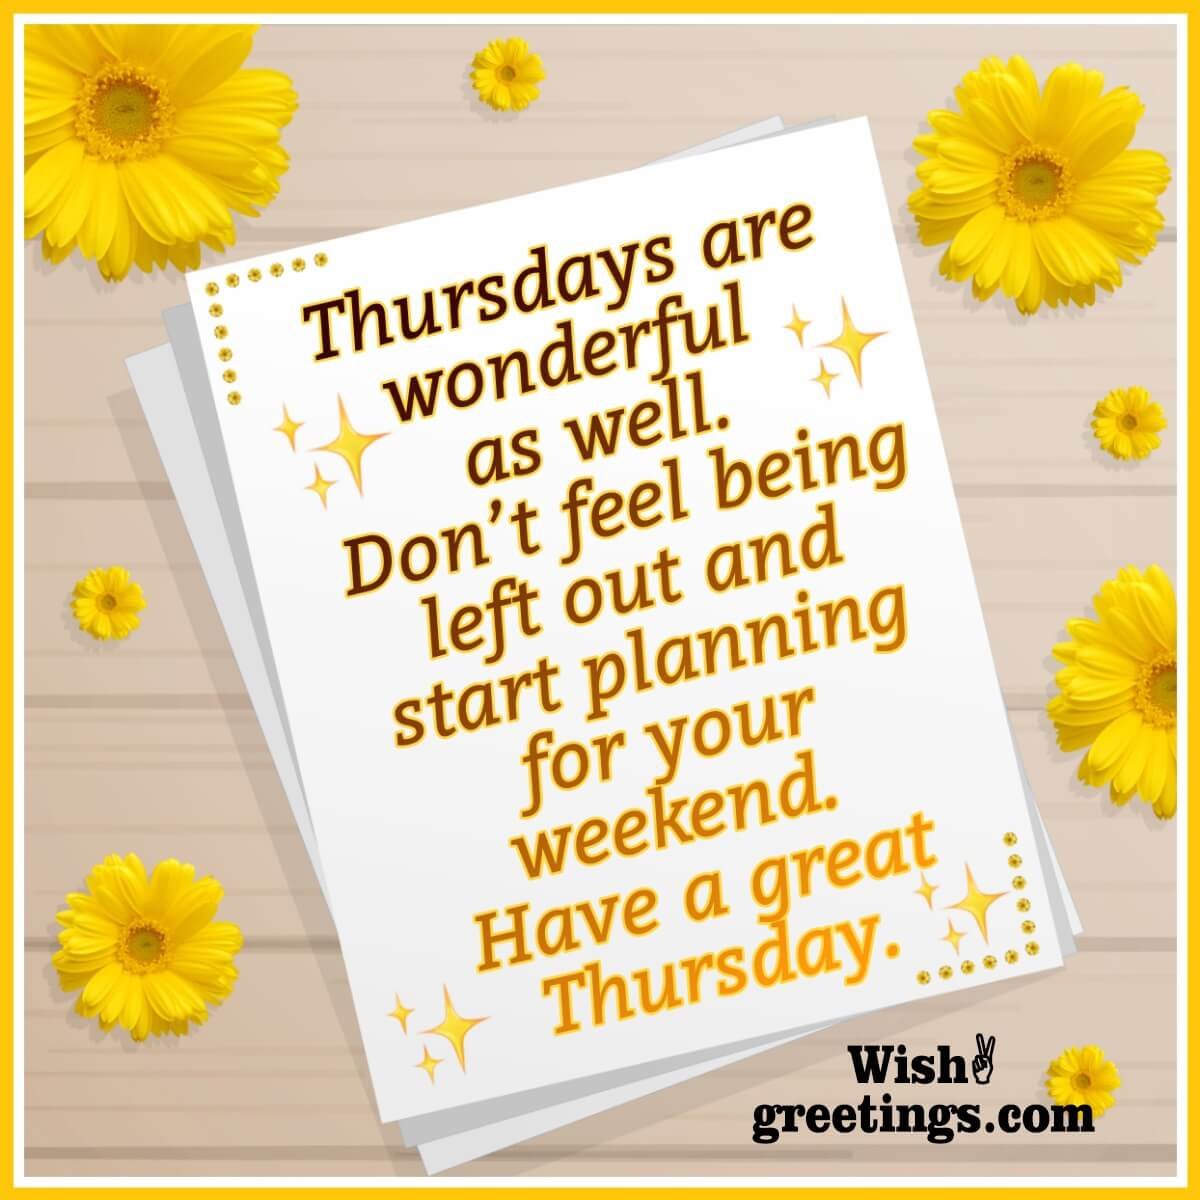 Wonderful Thursday Wish Image